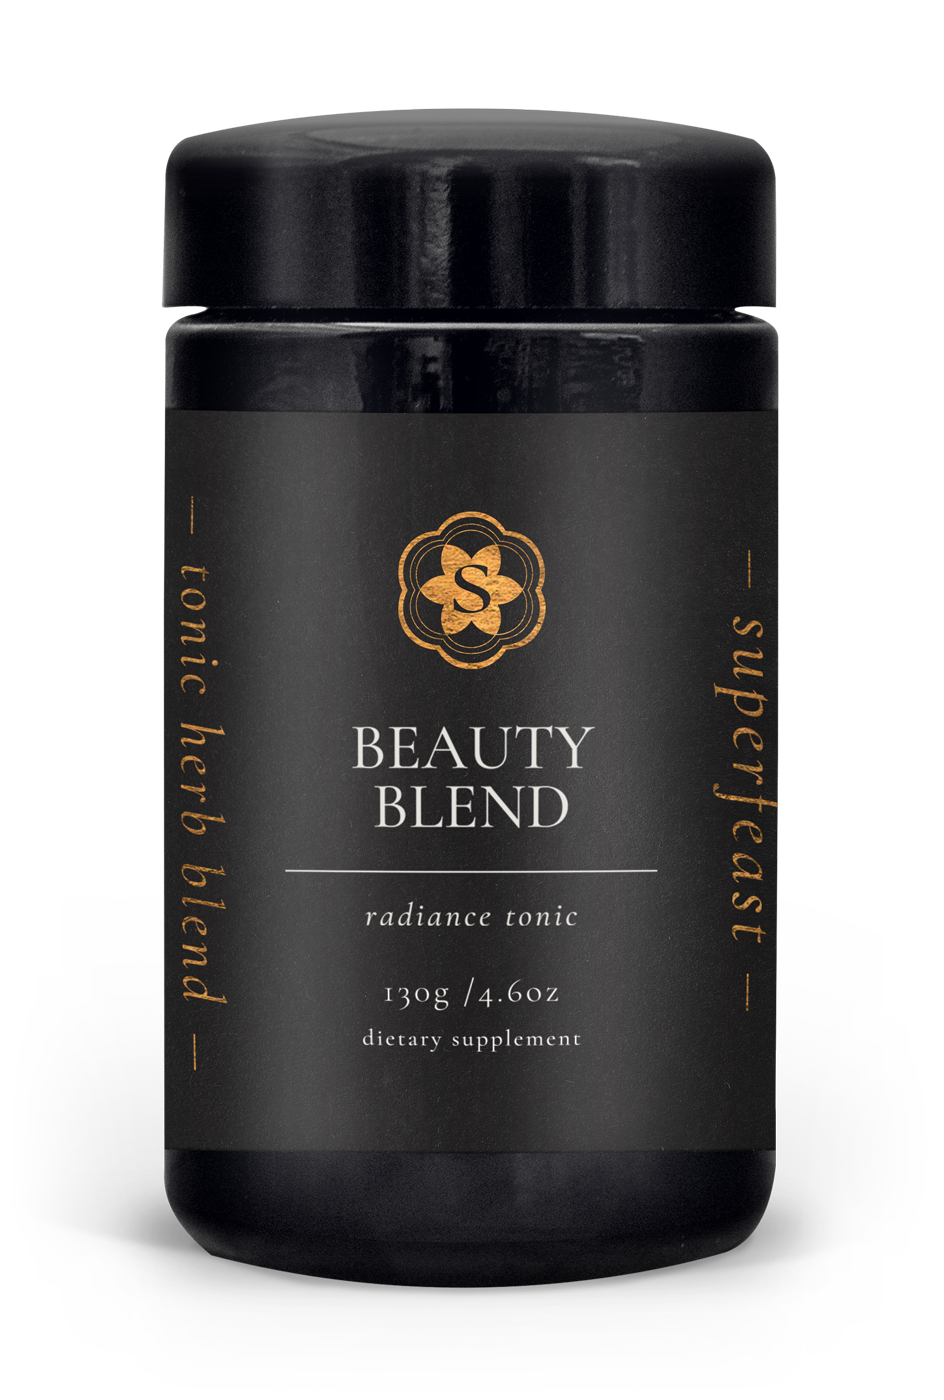 Beauty Blend 100g (Radiance Tonic)